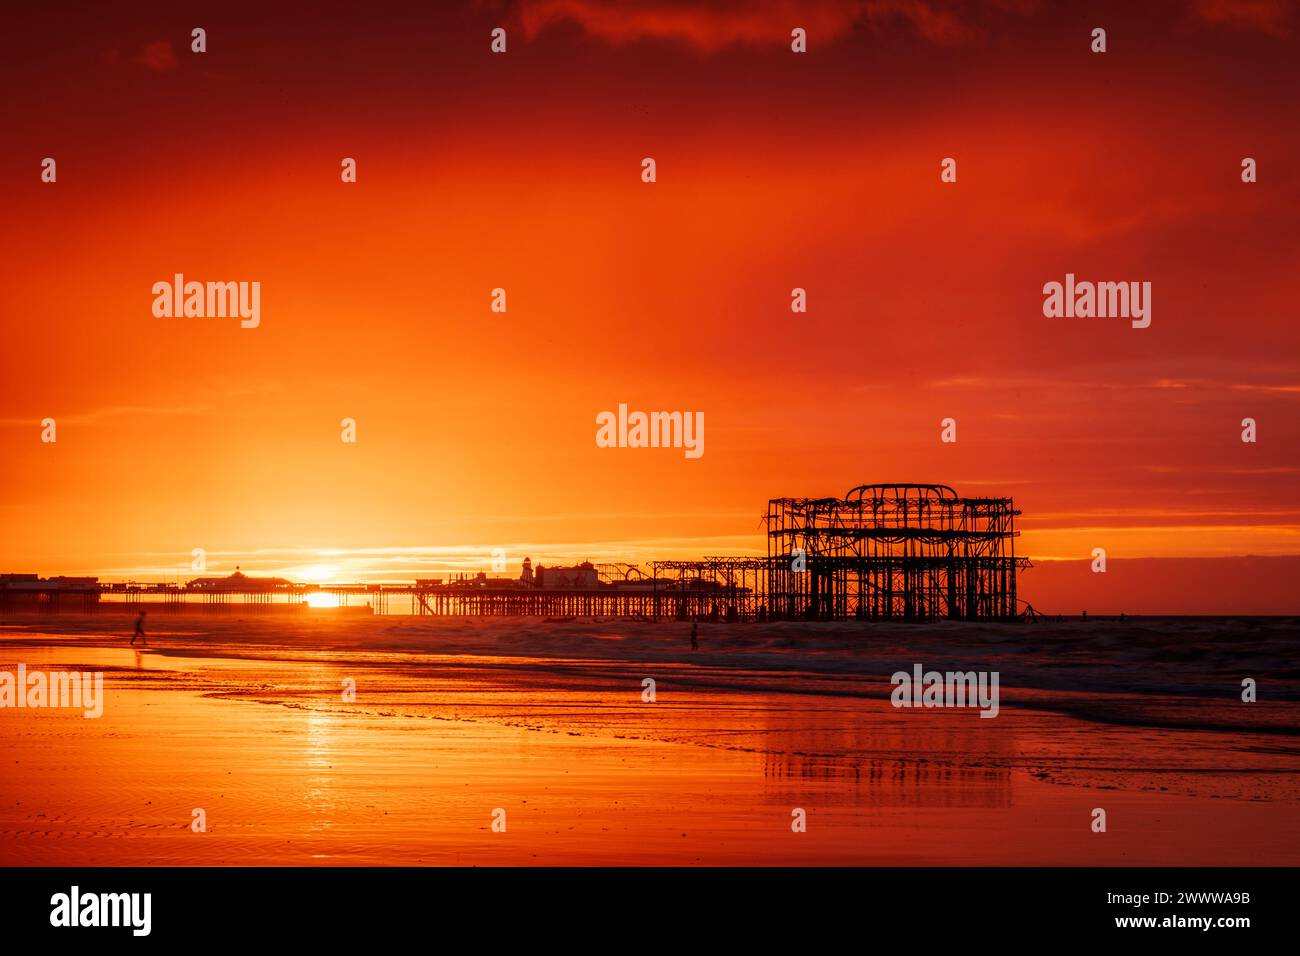 Brighton West Pier und Palace Pier während eines sehr lebhaften roten Sonnenaufgangs an der Ostküste von Sussex im Südosten Englands Großbritannien Stockfoto